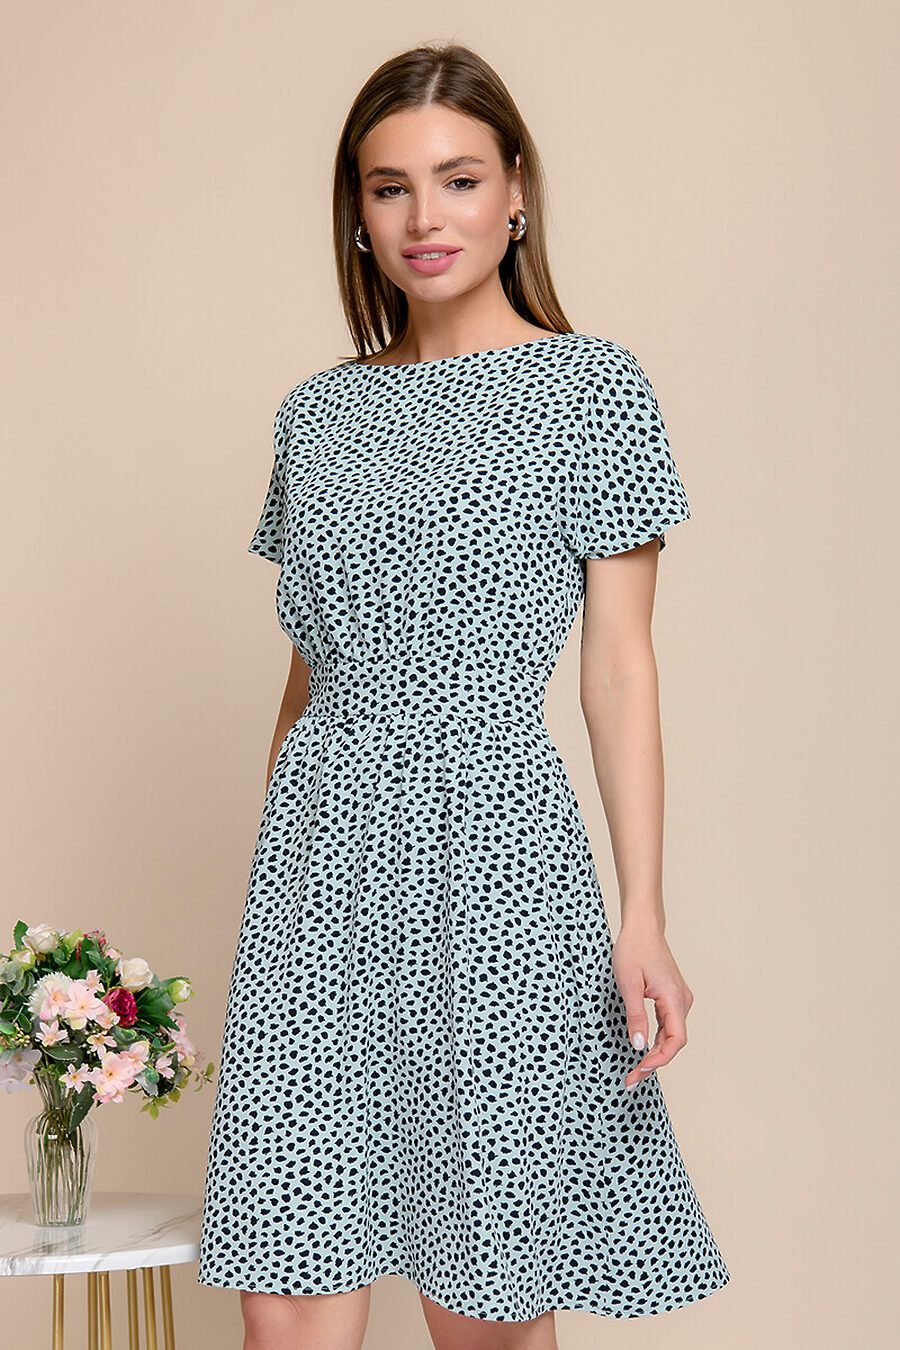 Платье для женщин 1001 DRESS 785350 купить оптом от производителя. Совместная покупка женской одежды в OptMoyo